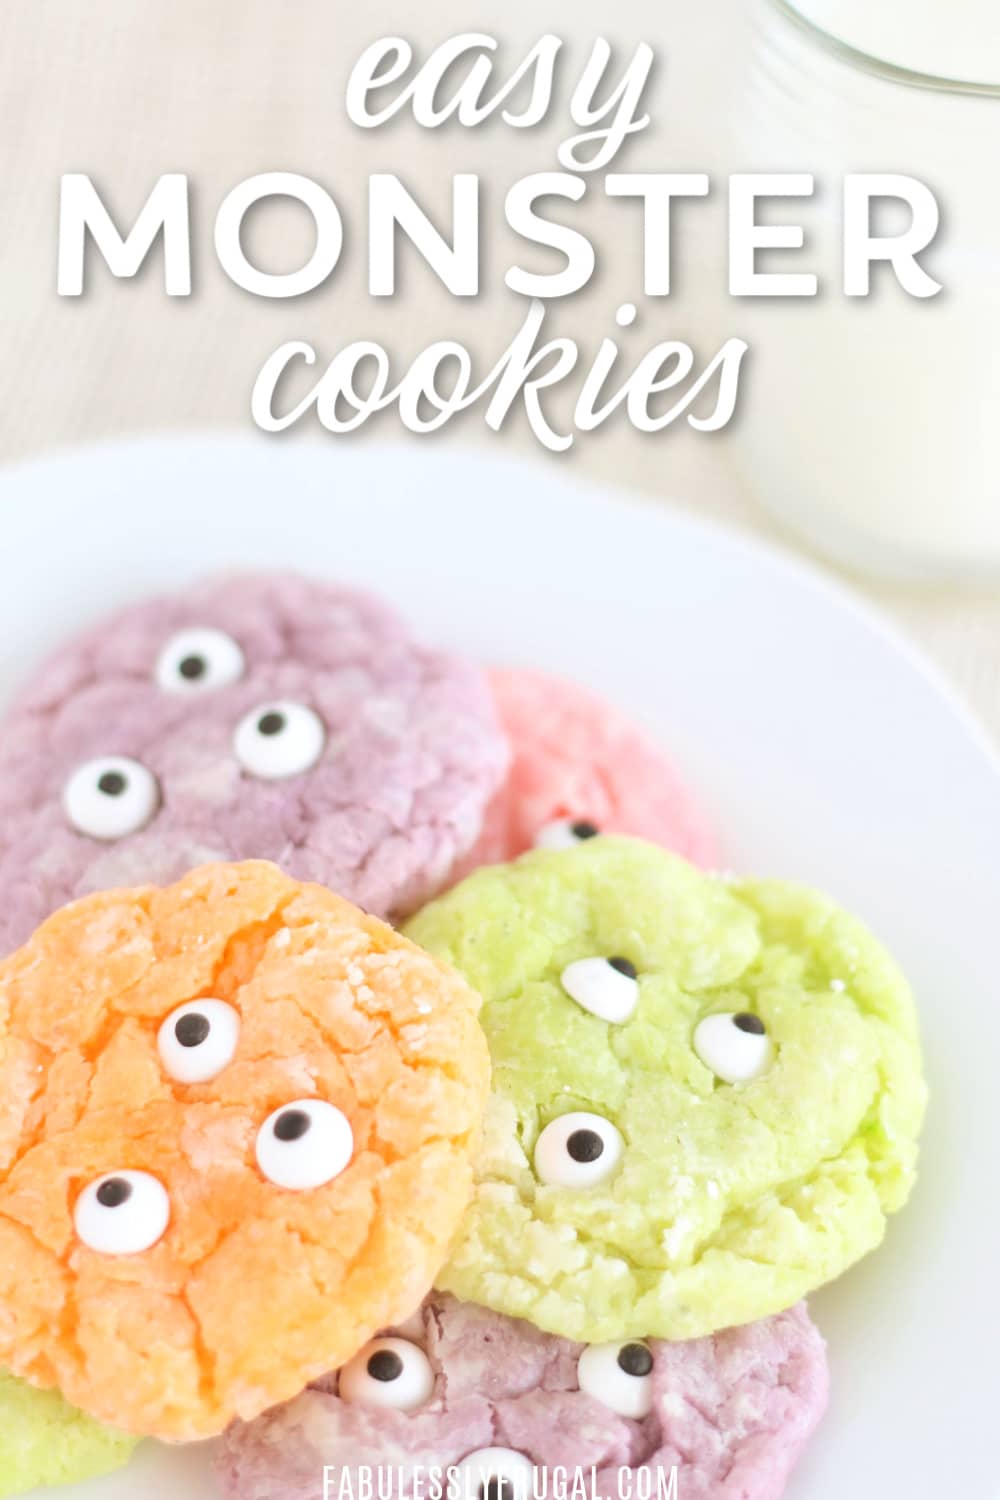 Easy monster eye cookies